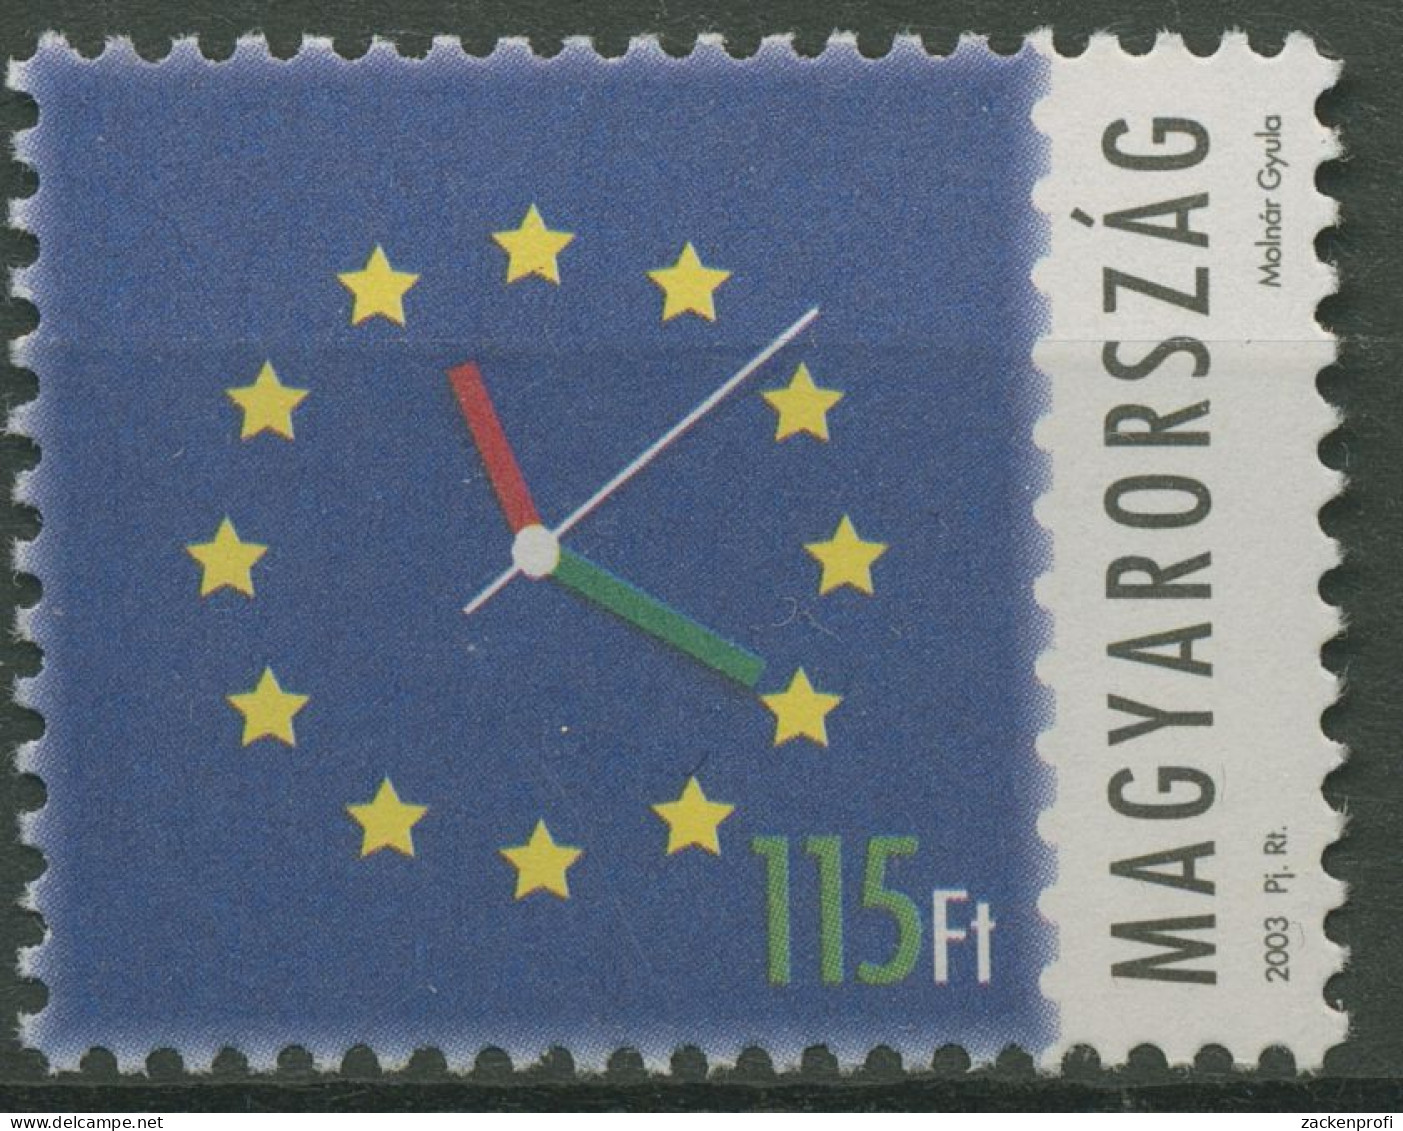 Ungarn 2003 Aufnahme In Die Europäische Union Ziffernblatt 4808 Postfrisch - Neufs